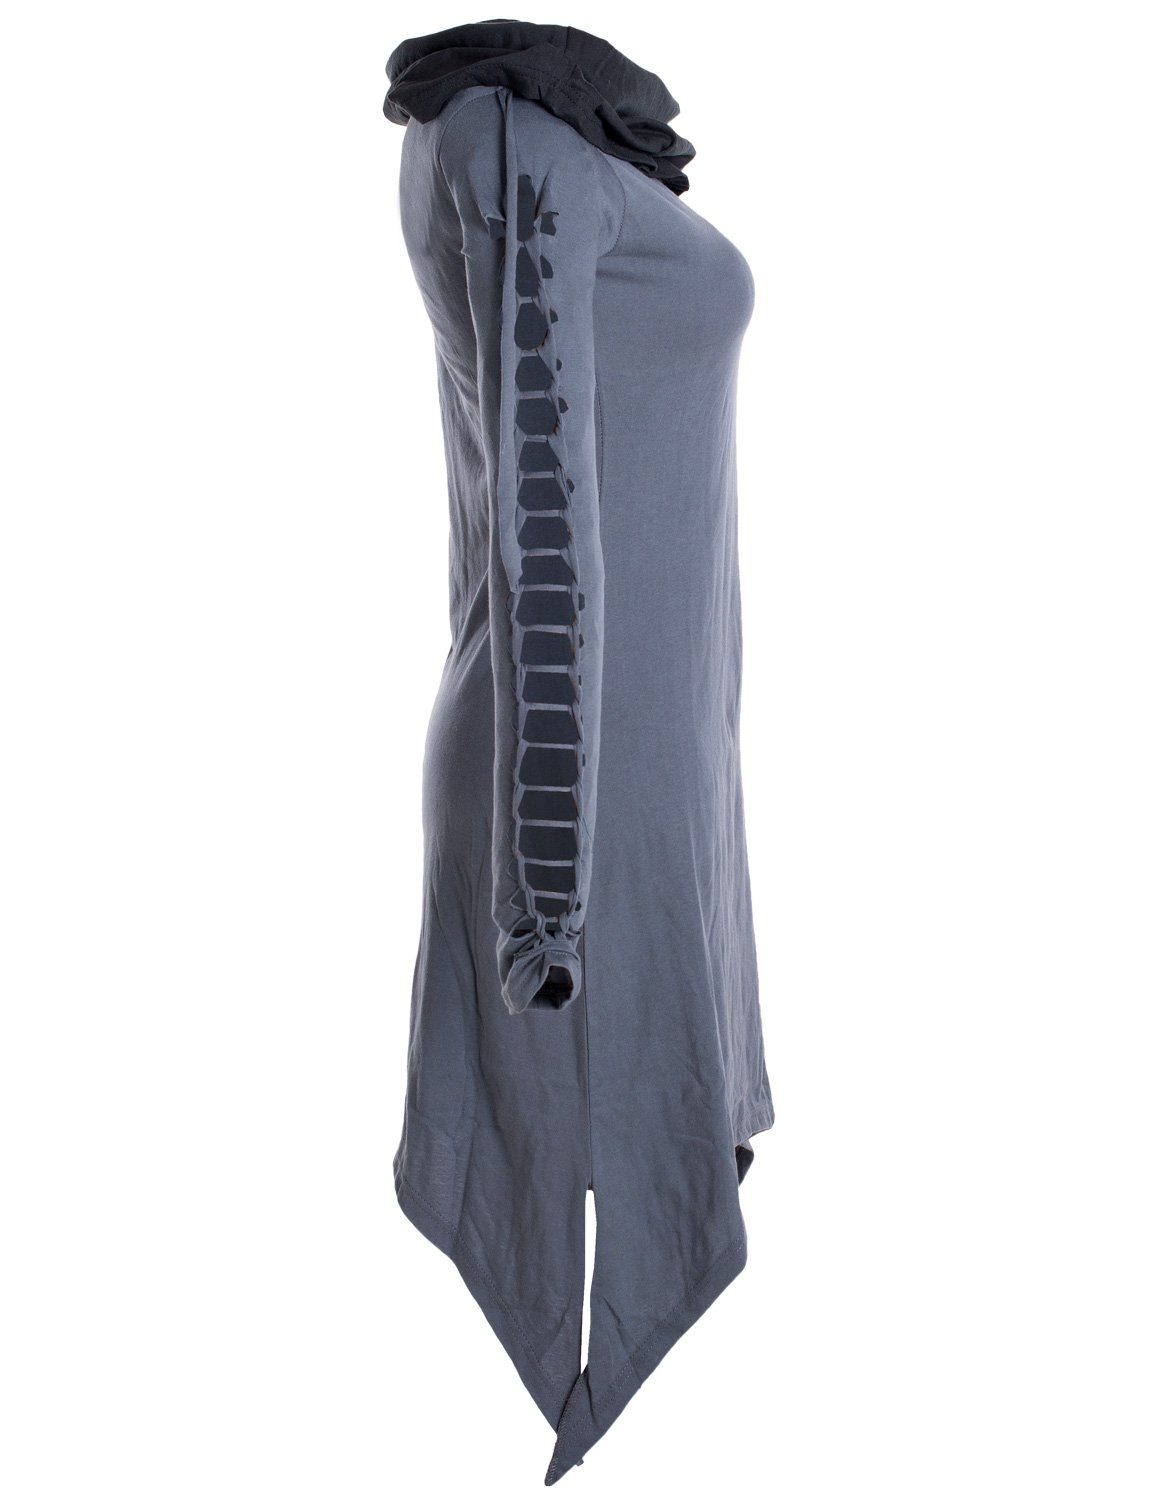 Zipfelkleid Boho, Ethne, Biobaumwolle aus Elfen Vishes Schalkragen Zweifarbiges Style grau Kleid mit langarm Goa,